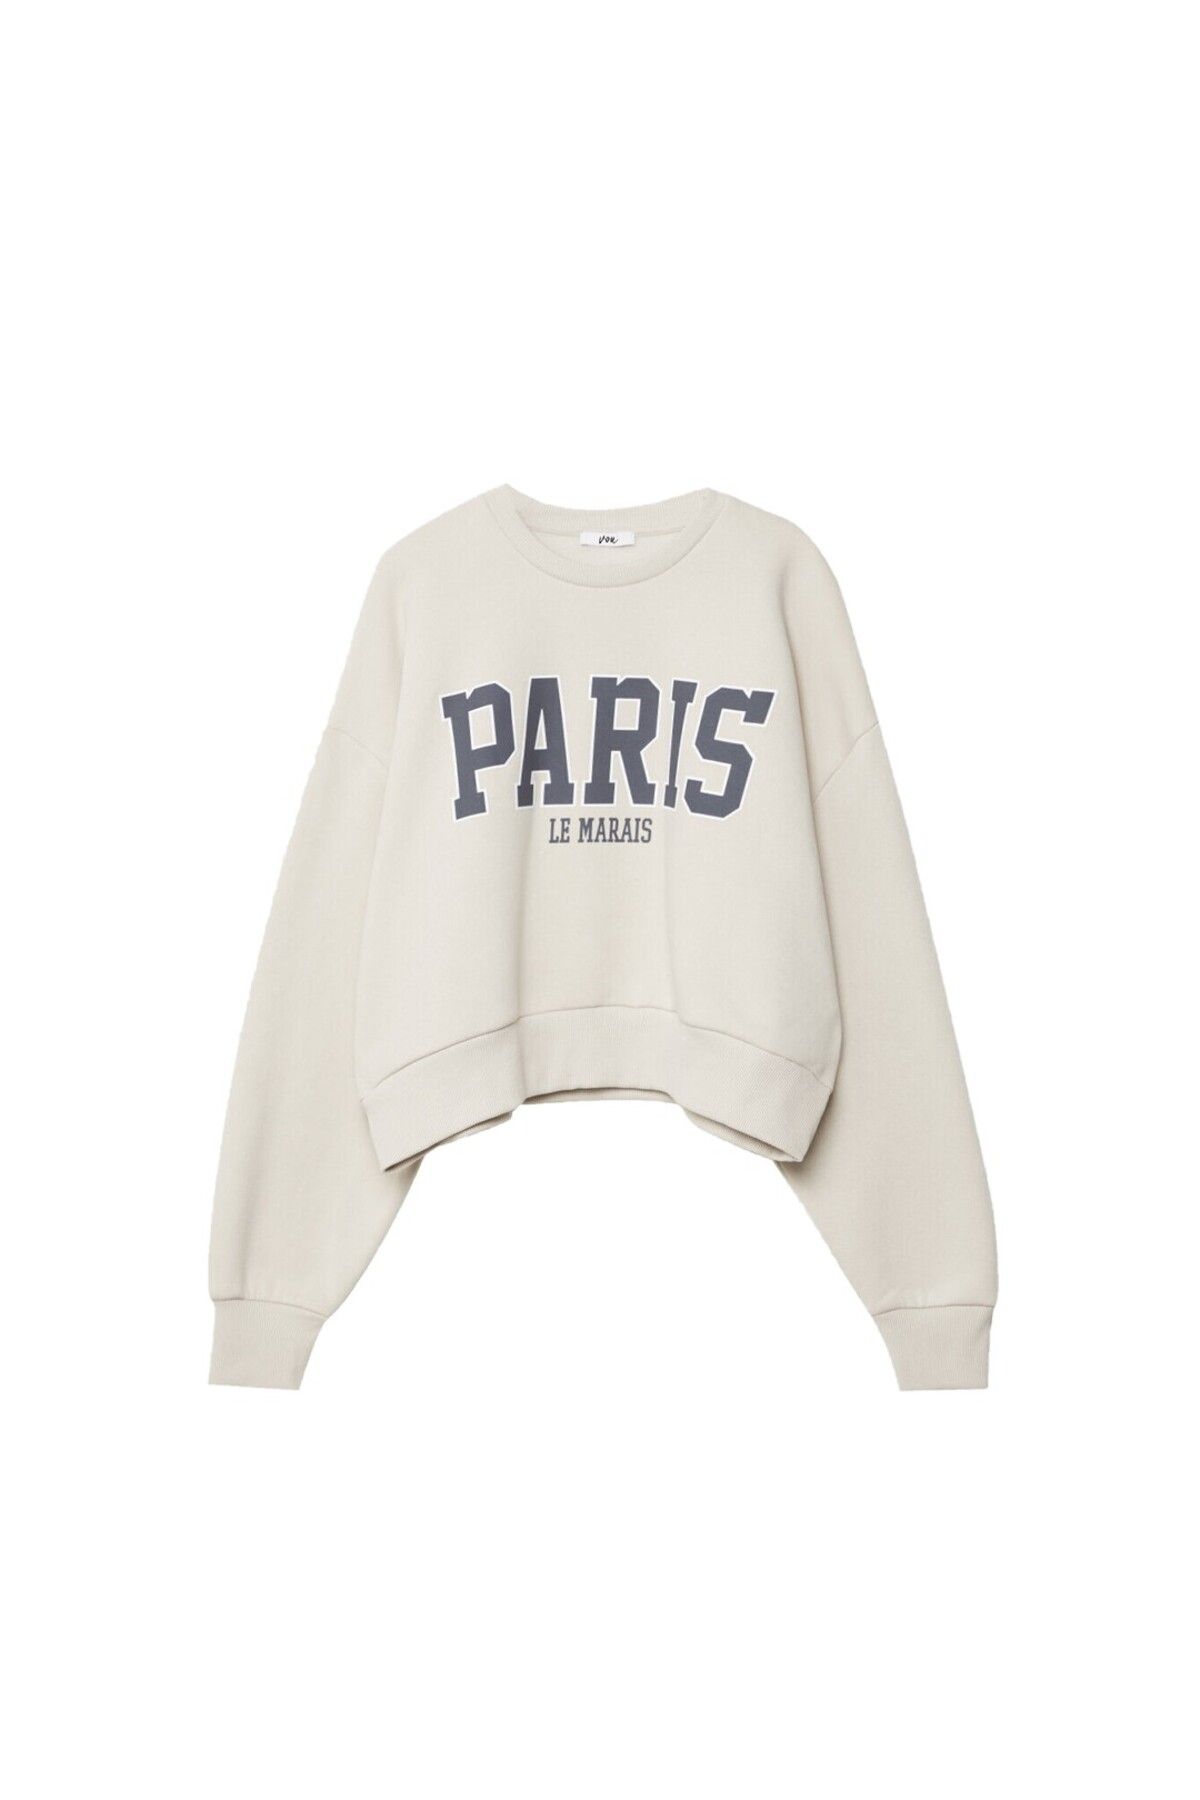 VOU Paris Baskılı Oversize Kadın Sweatshirt